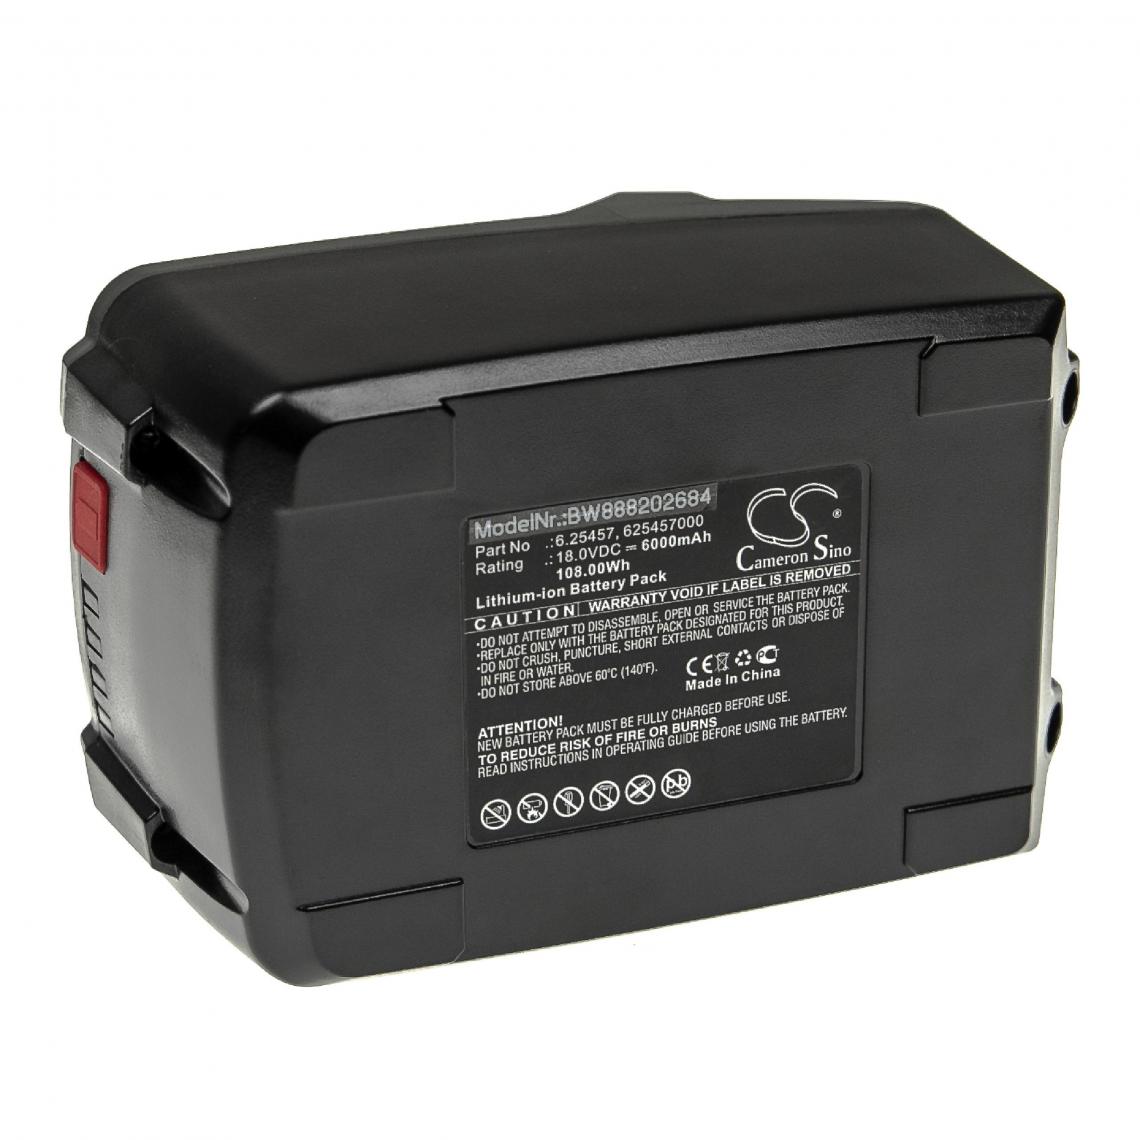 Vhbw - vhbw Batterie compatible avec Metabo BHA LTX, BS 18, BS 18 602207500, BS 18 602207510 outil électrique (6000mAh Li-ion 18 V) - Autre appareil de mesure